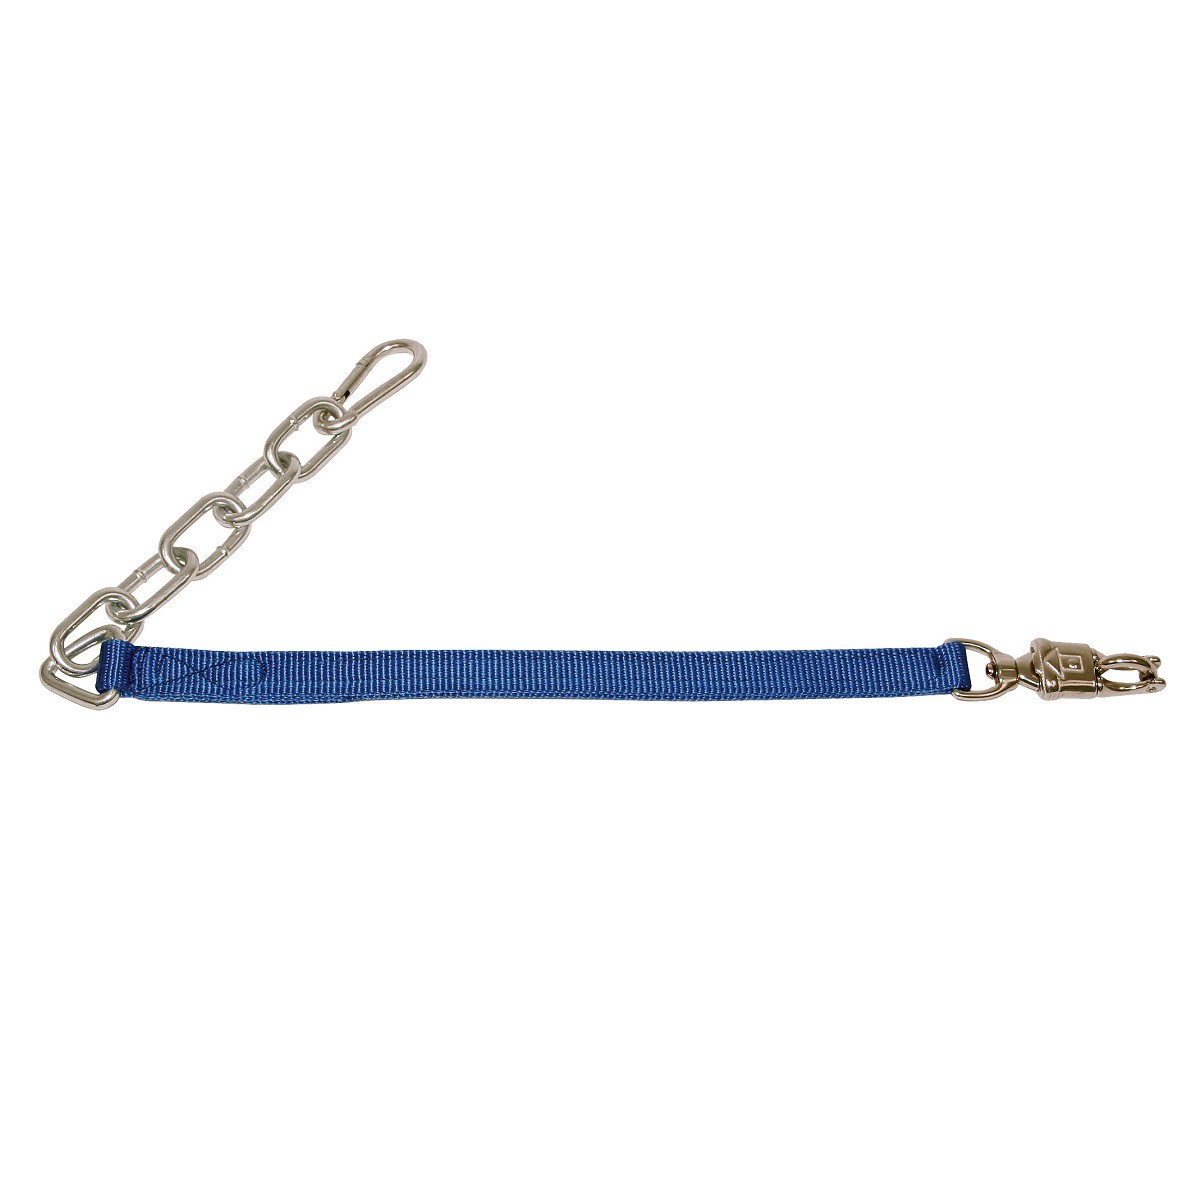 Tie strap Kerbl, length 70cm adjustable